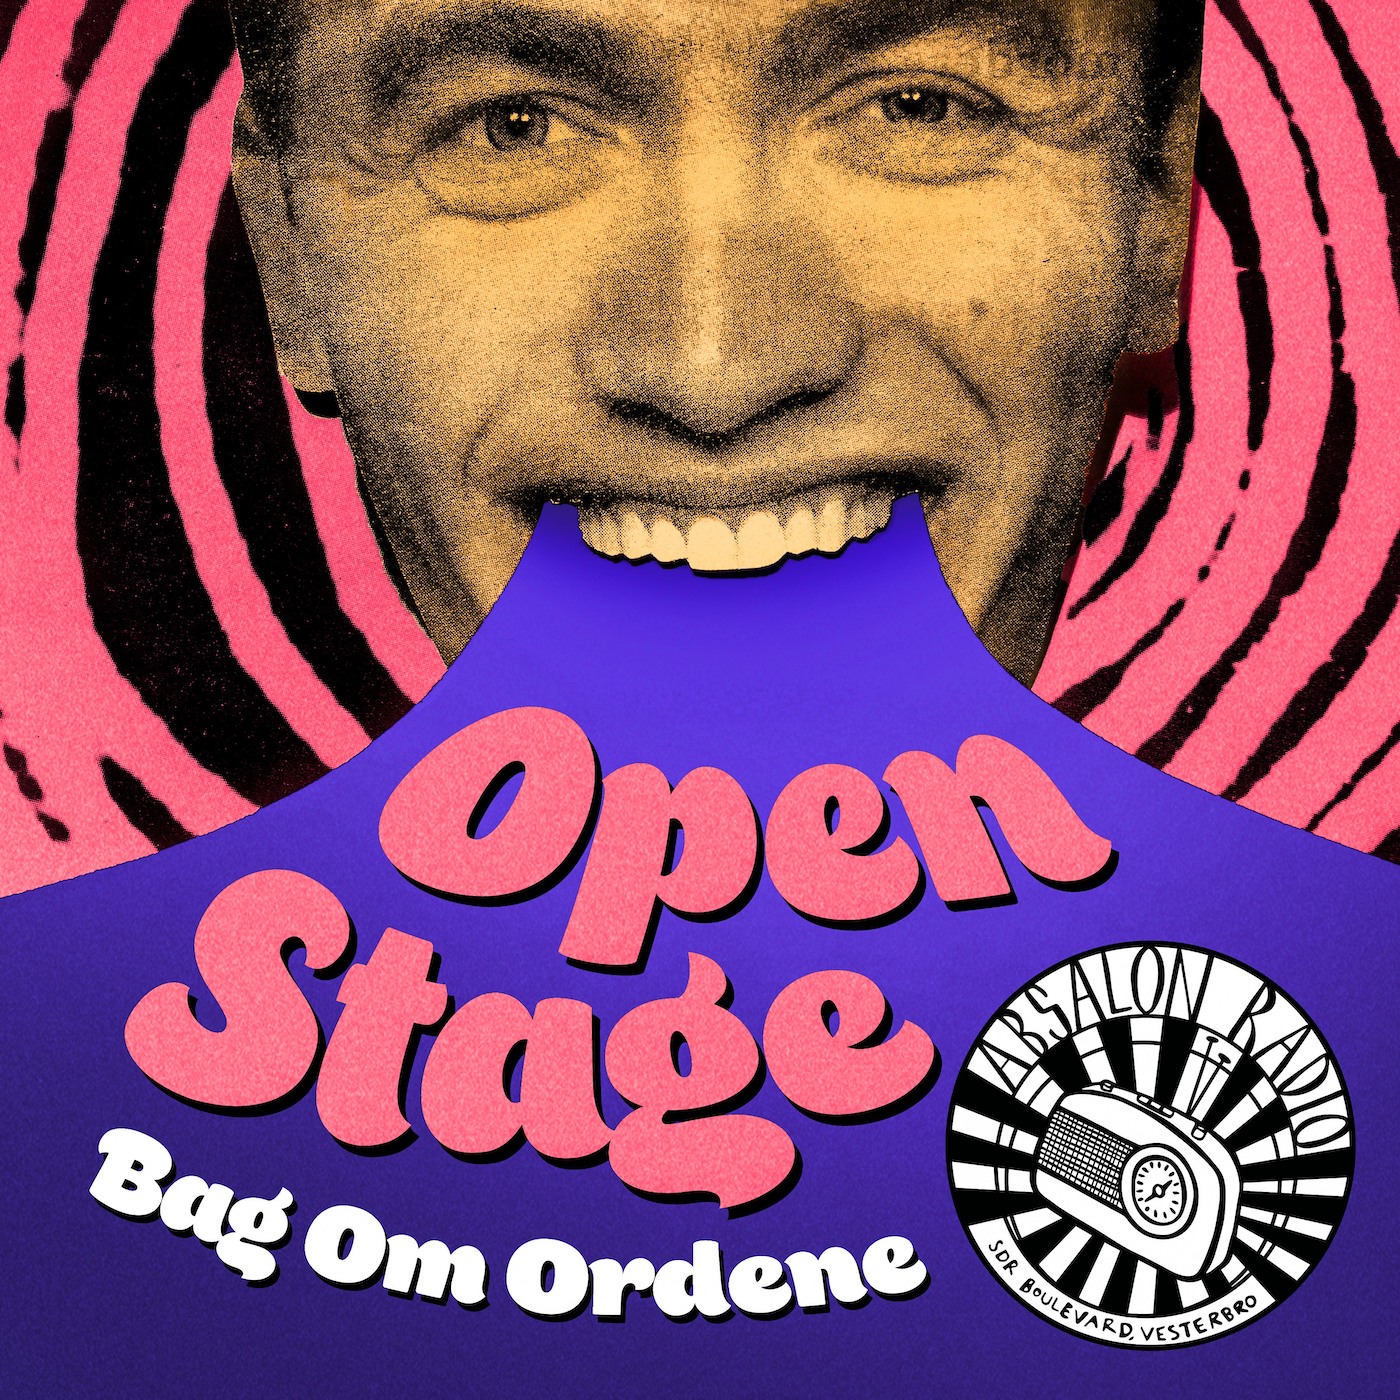 Artwork for Open Stage: Bag om ordene